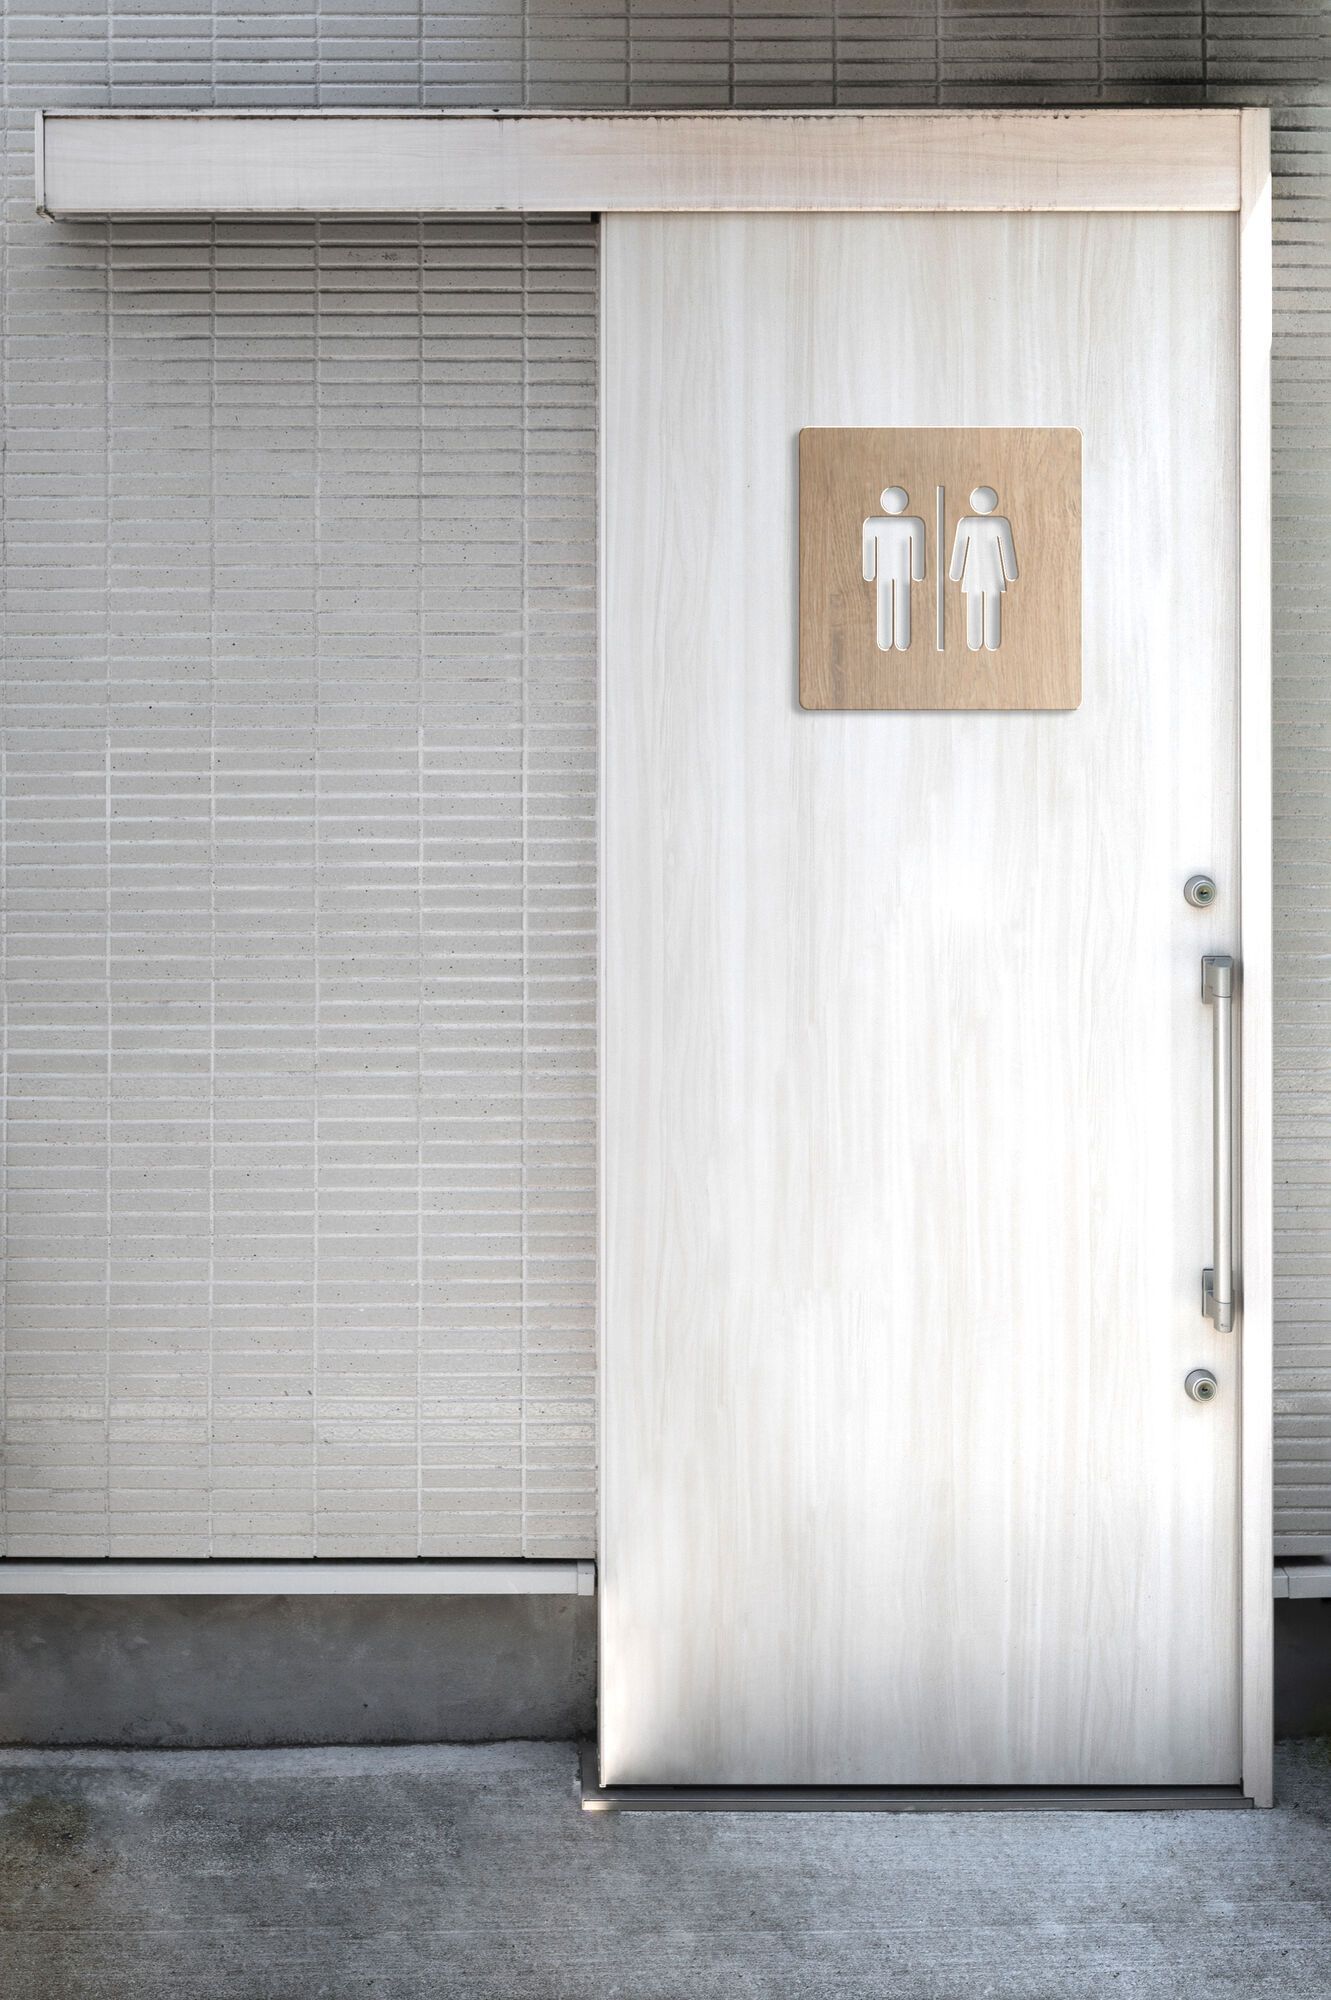 Один туалет на чотири заклади освіти: у ліцеї Кременчука мама школярки обурена, бо дитина боїться ходити у вбиральню